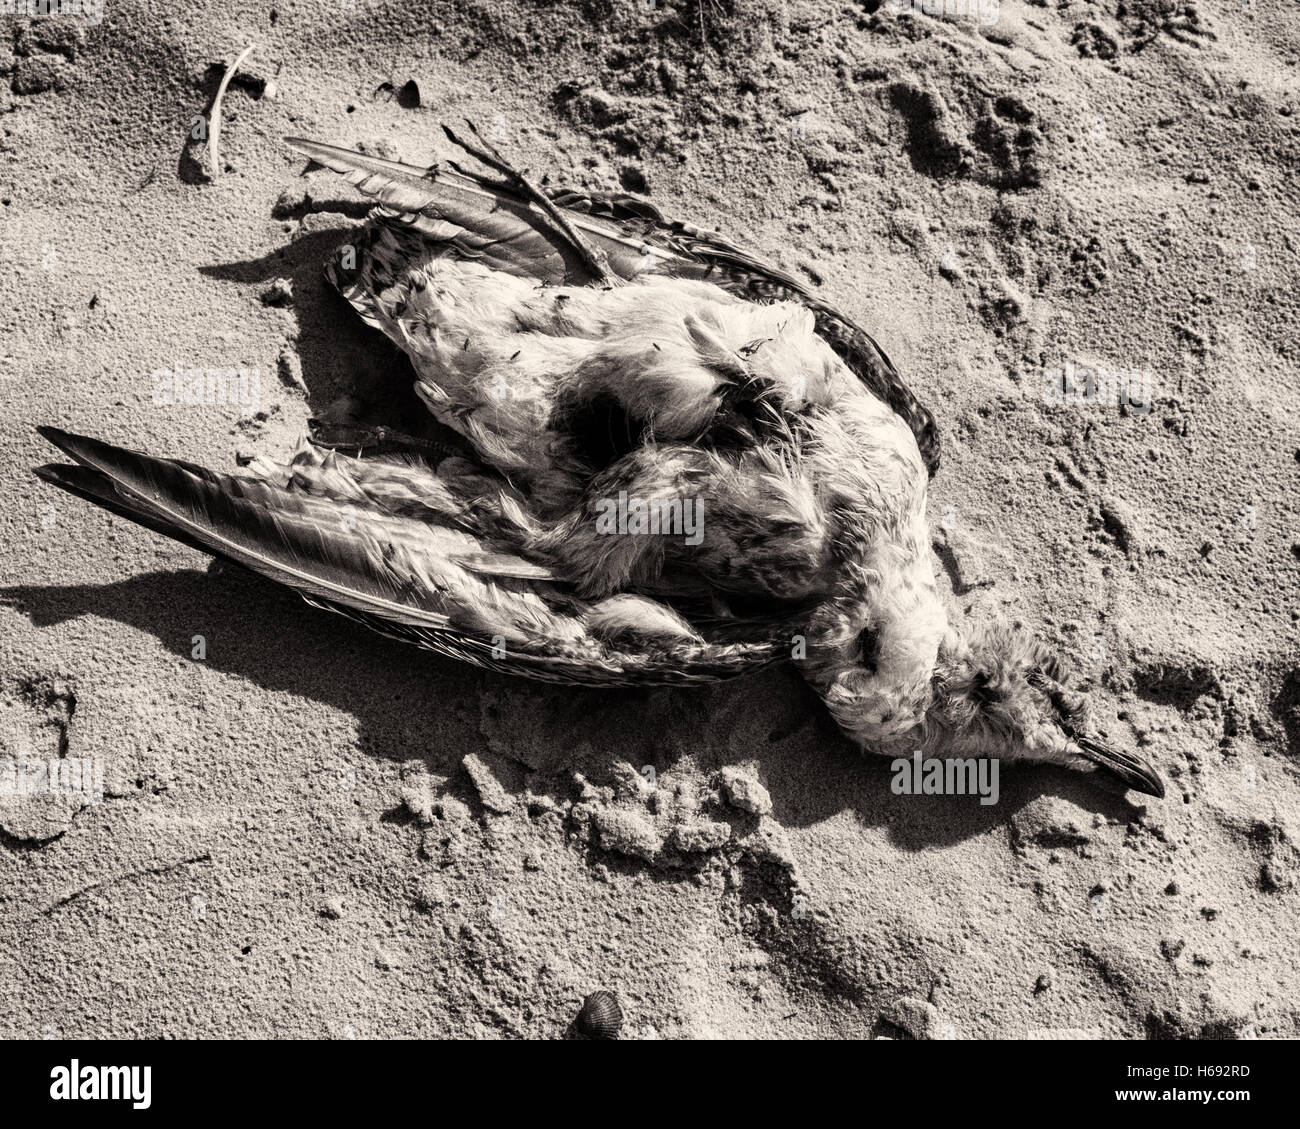 Am Strand, Langeoog. Deutschland Alemania. Una de aves marinas muertas encontró acostado en la playa de arena. Es un día soleado, causando fuertes sombras y de alto contraste en la arena. Foto de stock